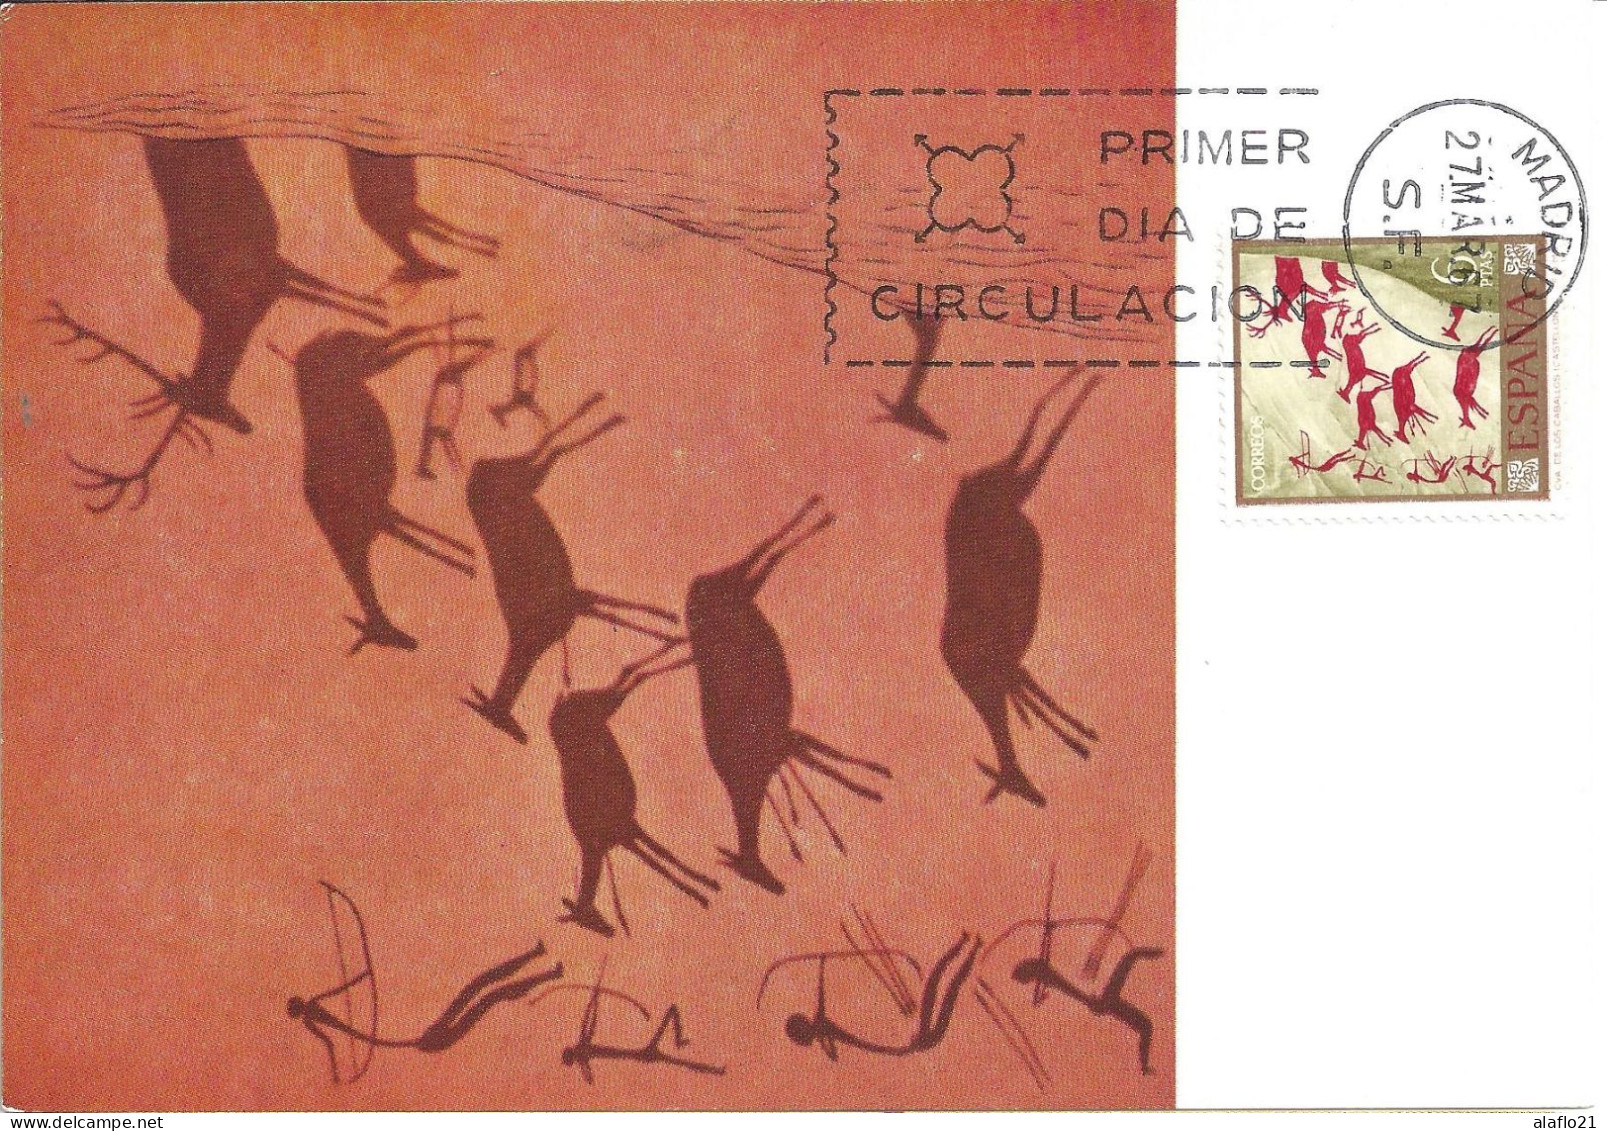 ESPAGNE - CARTE MAXIMUM - Yvert N° 1441 - PEINTURES RUPESTRES - JOURNEE Du TIMBRE 1967 - Maximum Kaarten